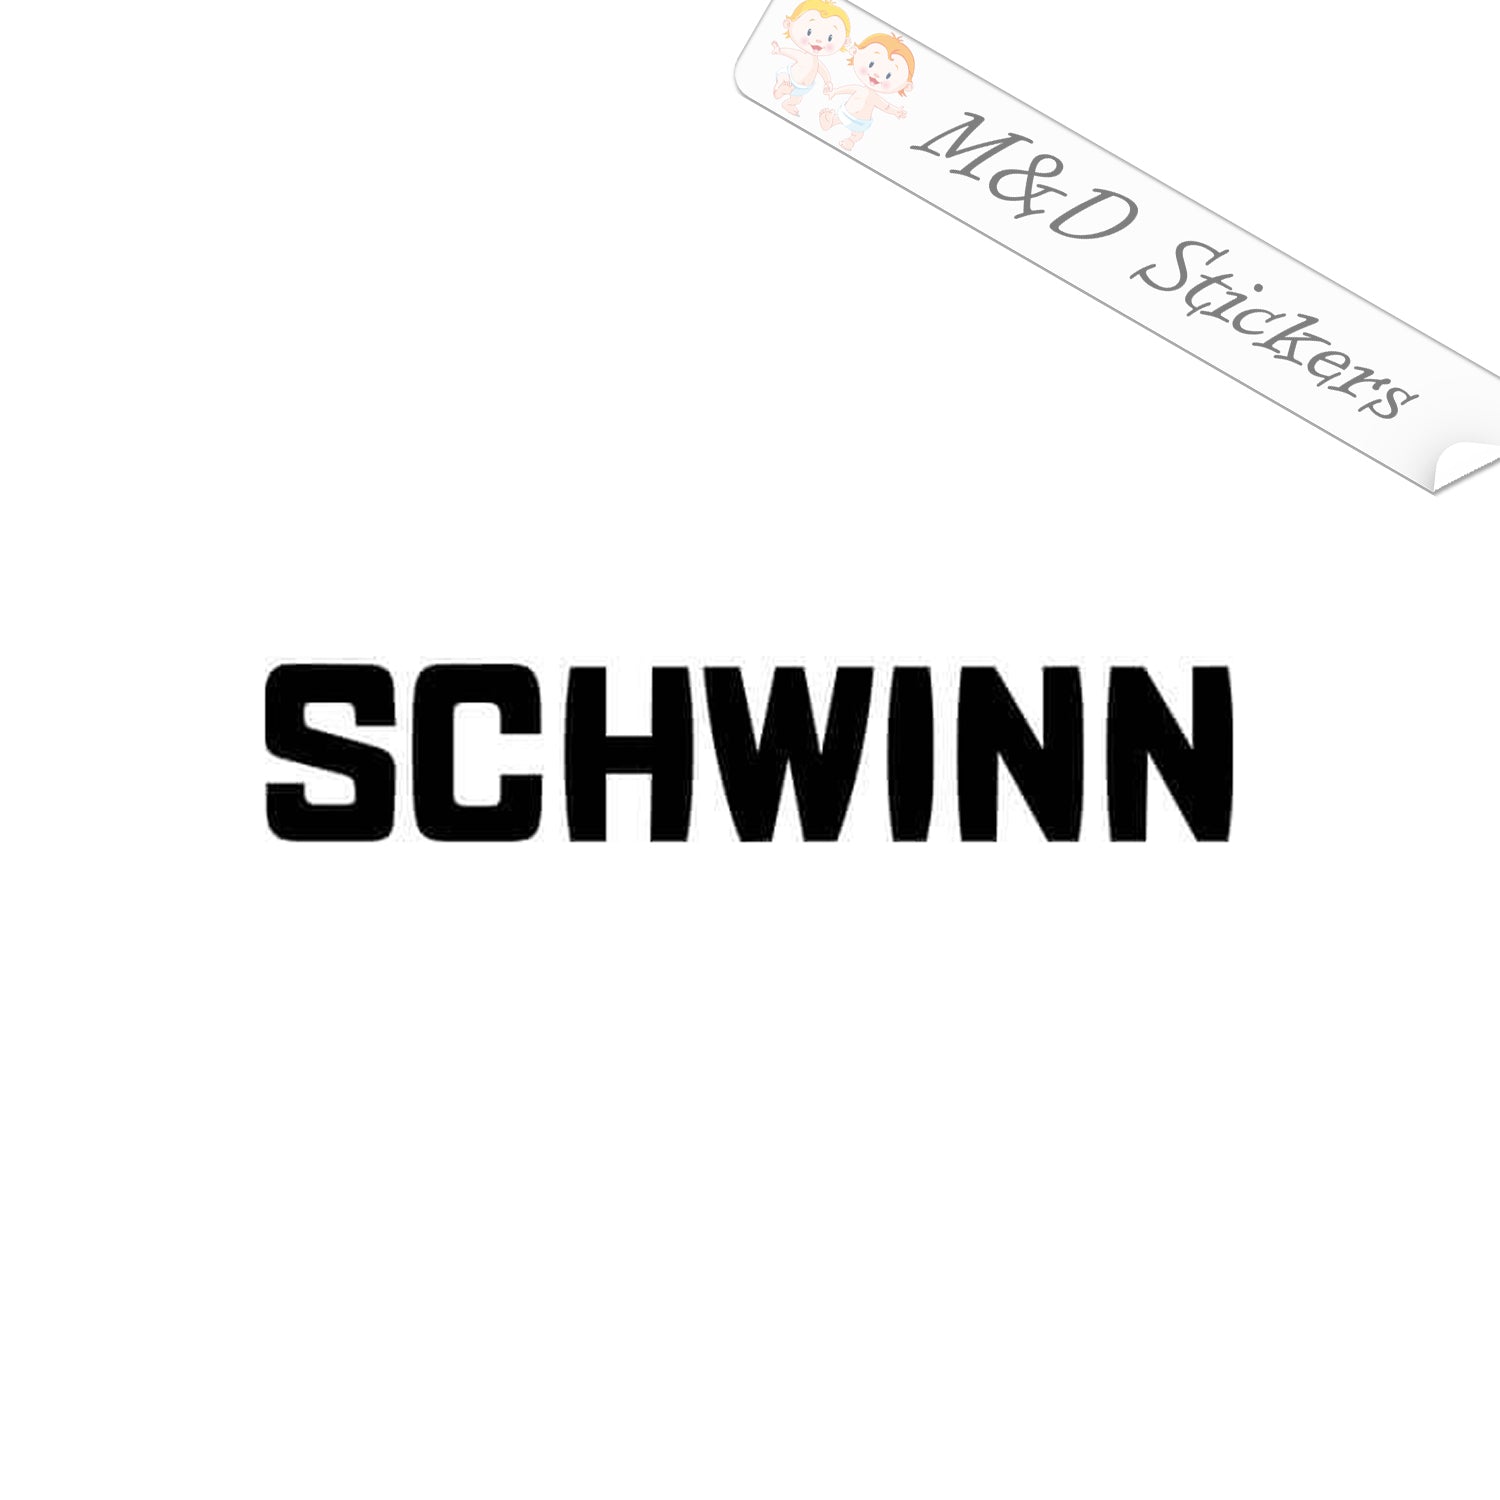 schwinn stickers